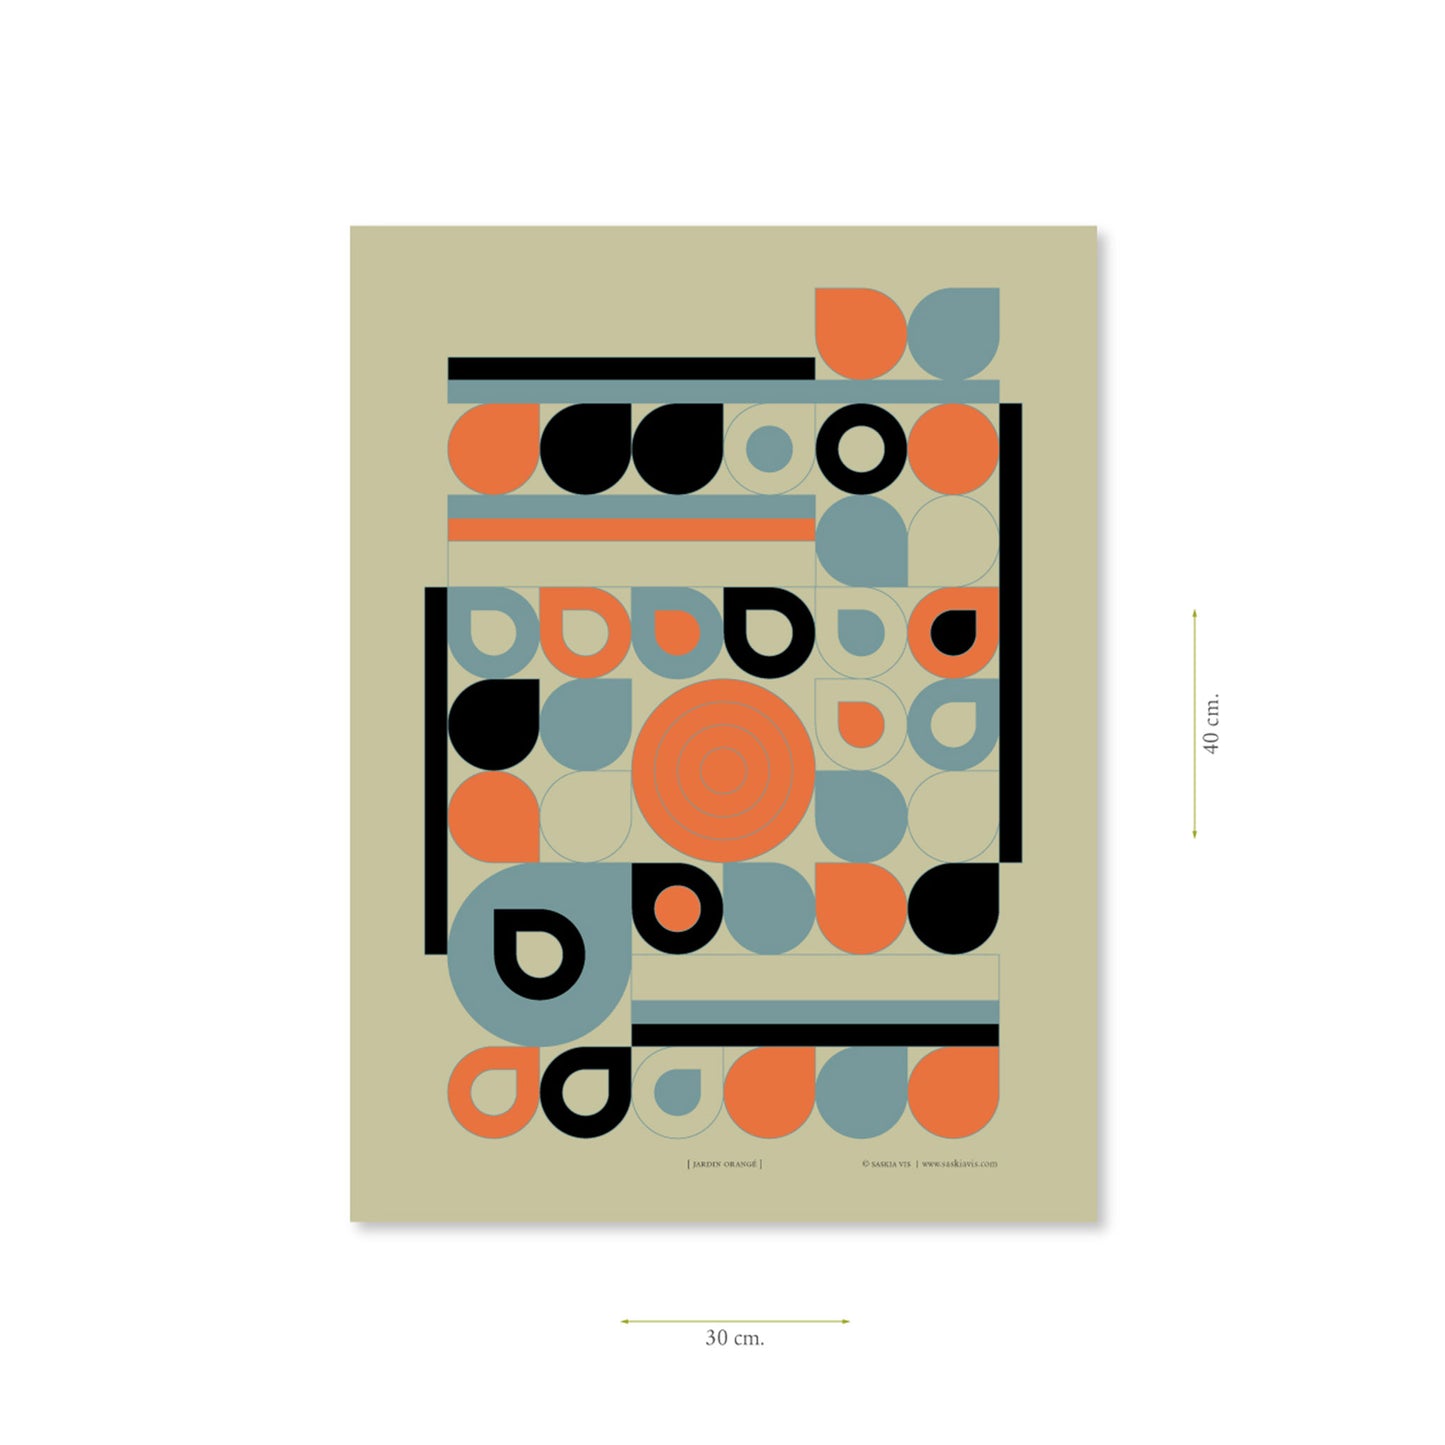 Productafbeelding, poster "jardin orange", met aanduiding van het formaat erop weergegeven 30 x 40 cm